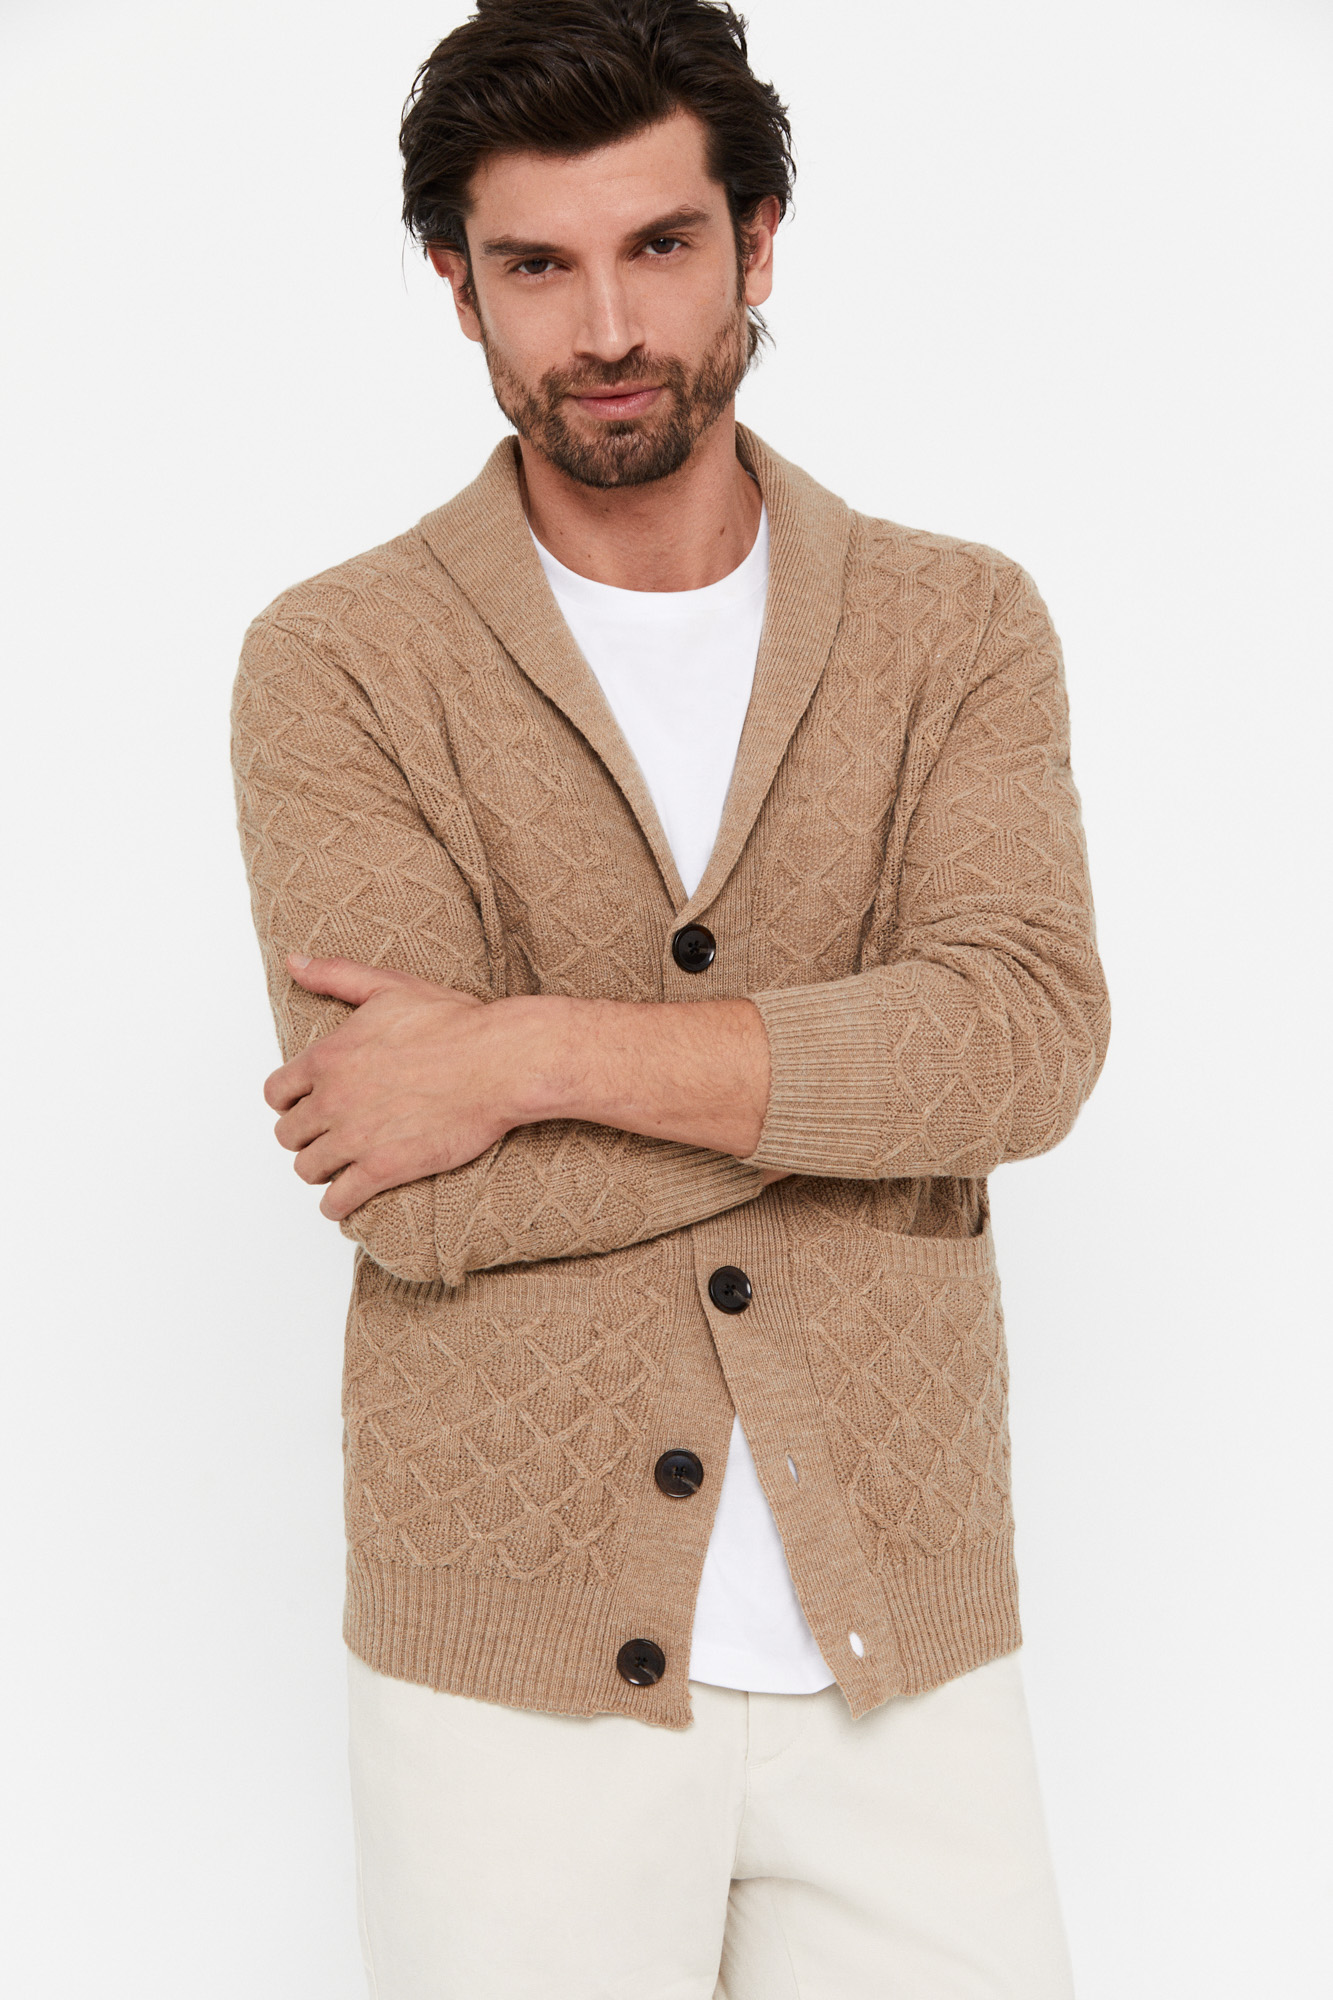 Cárdigan lana botones aranes | Outlet de jerséis de hombre Factory